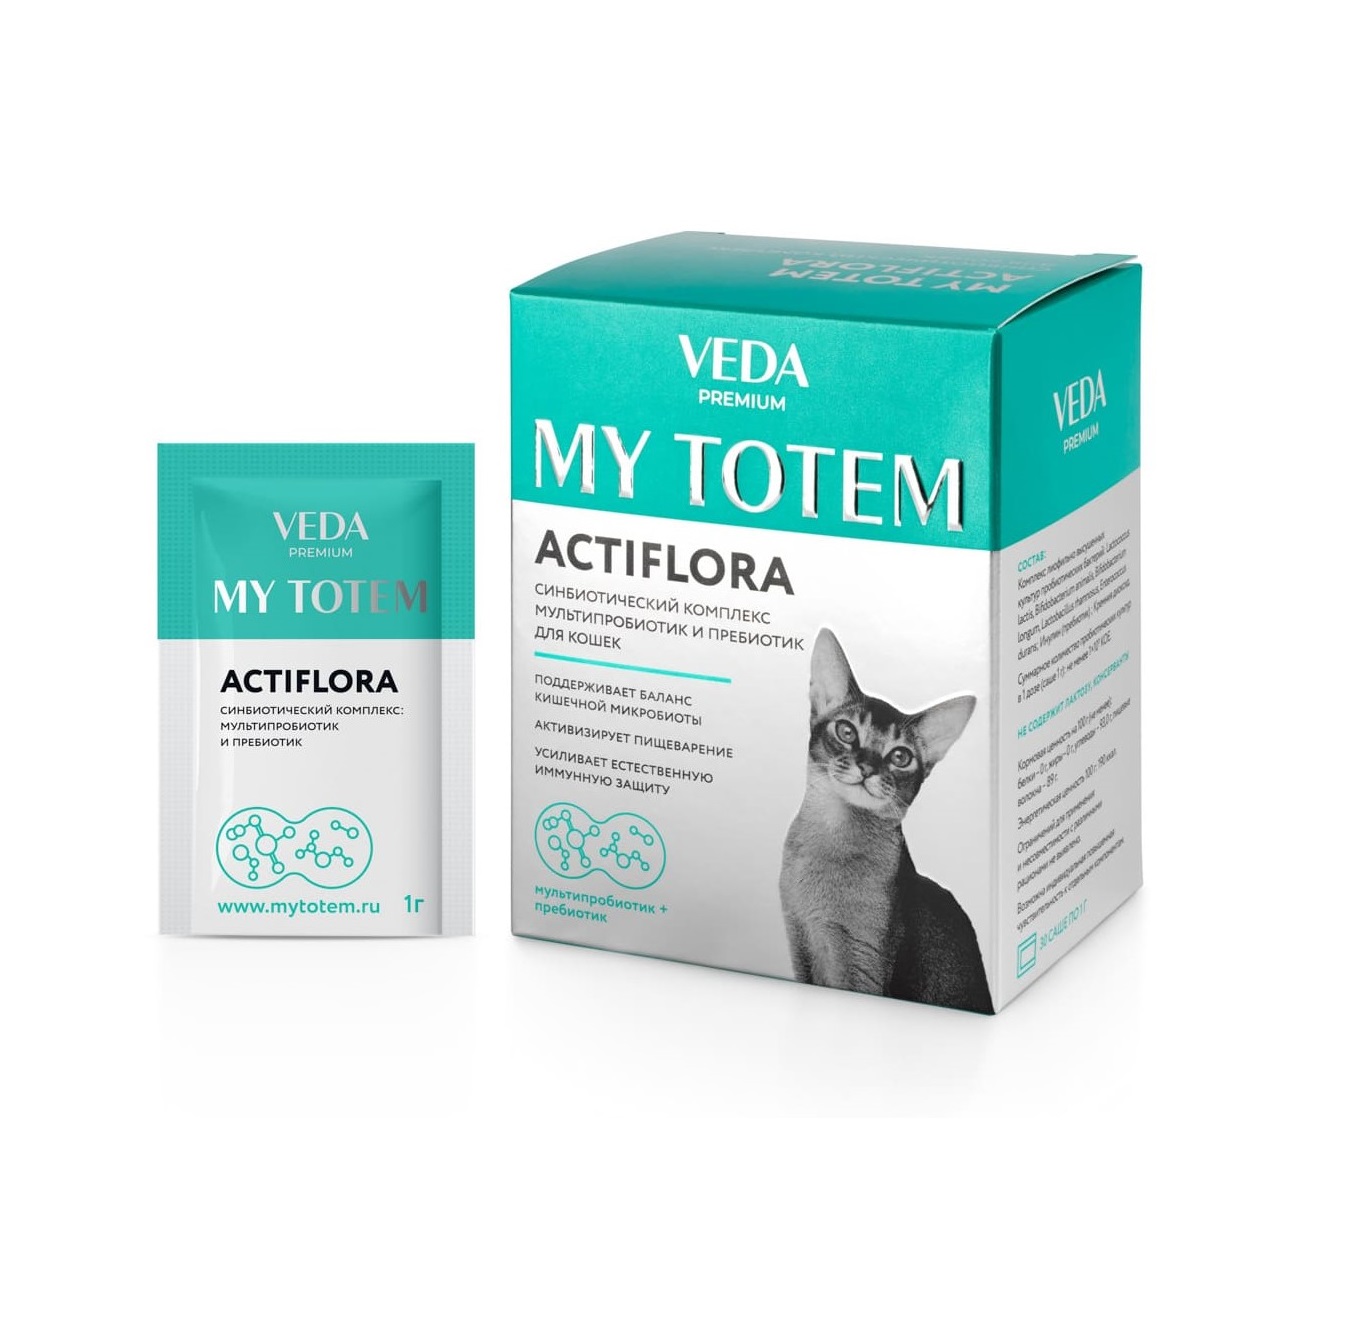 Мой Тотем - Актифлора - Синбиотический комплекс для кошек, 1гр (My Totem Veda) 1 коробка = 30 саше